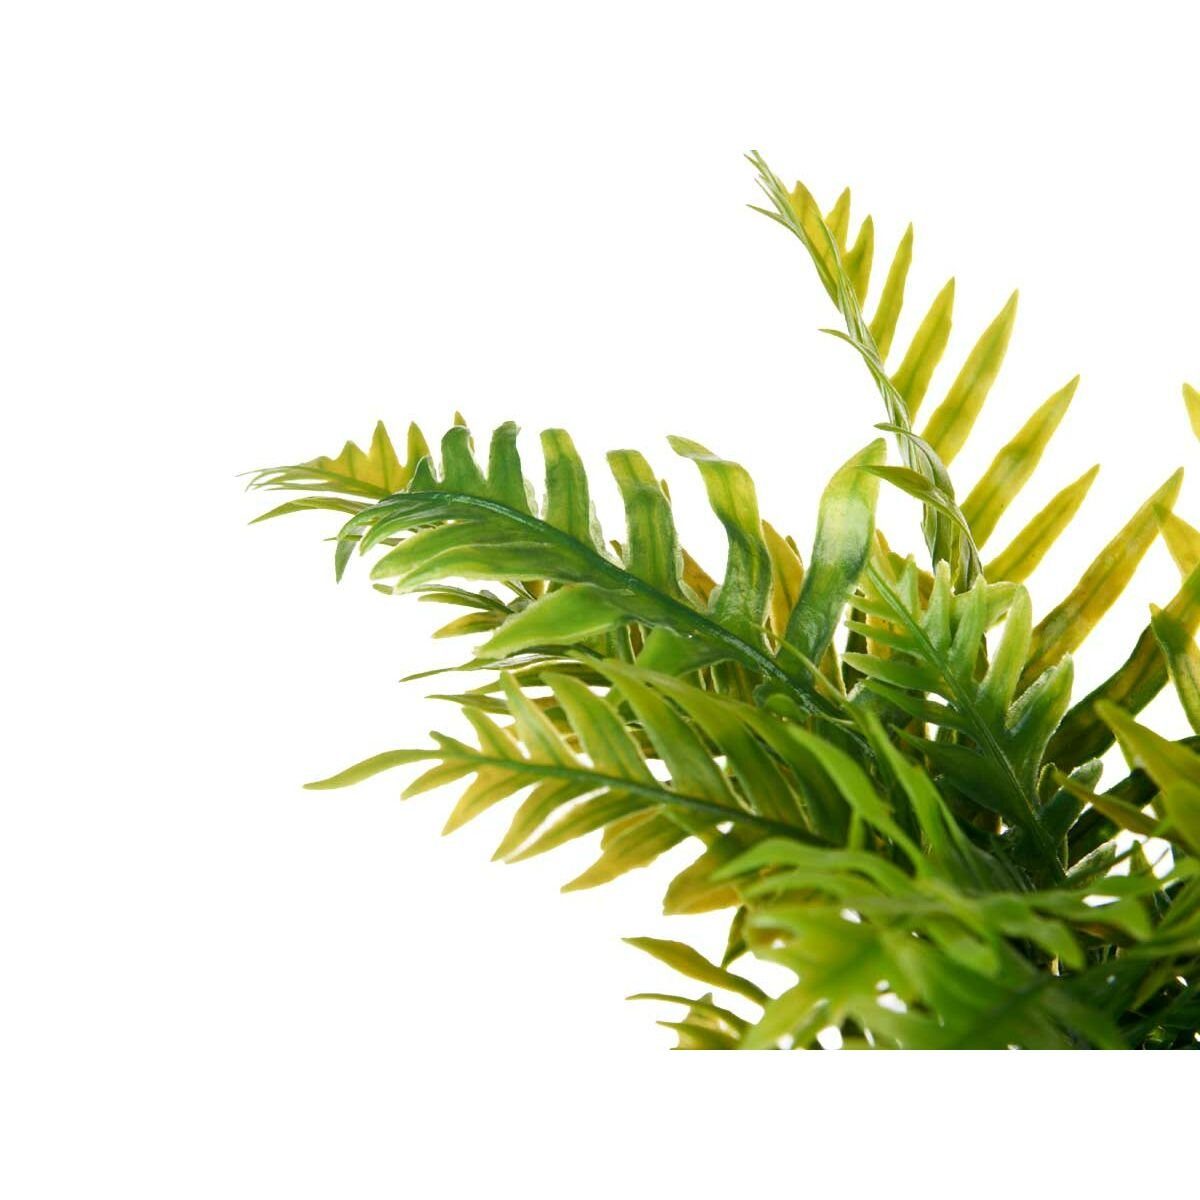 cm Palme Kunststoff cm Dekorationspflanze Ibergarden, Künstliche 6 14 12 Zimmerpflanze Höhe Stück, 45 x 12 Zement x